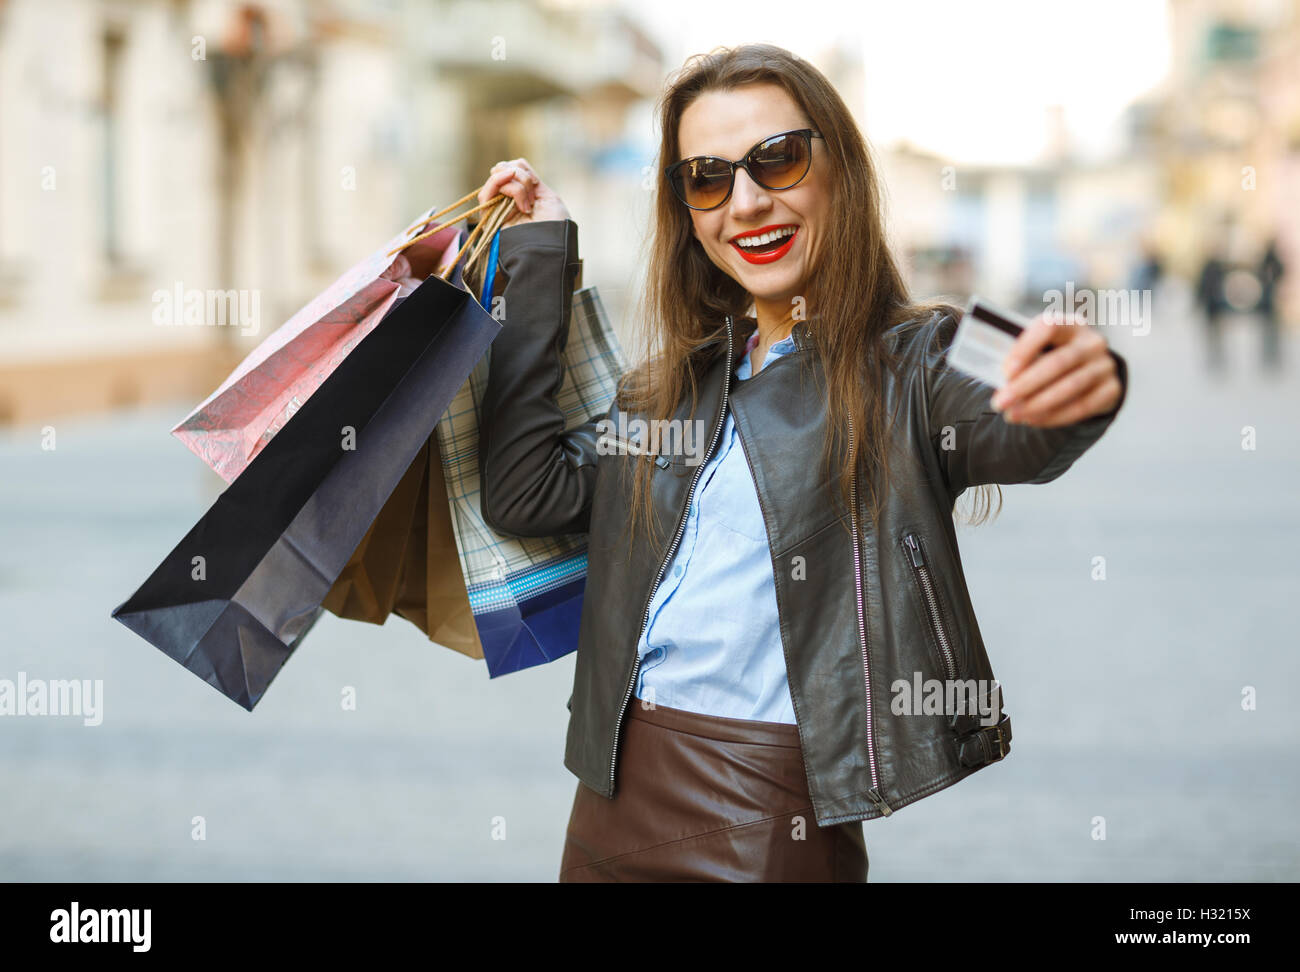 Verkauf, Einkauf, Tourismus und glückliche Menschen Konzept - schöne Frau mit Einkaufstüten und Kreditkarte in den Händen auf einer Straße Stockfoto